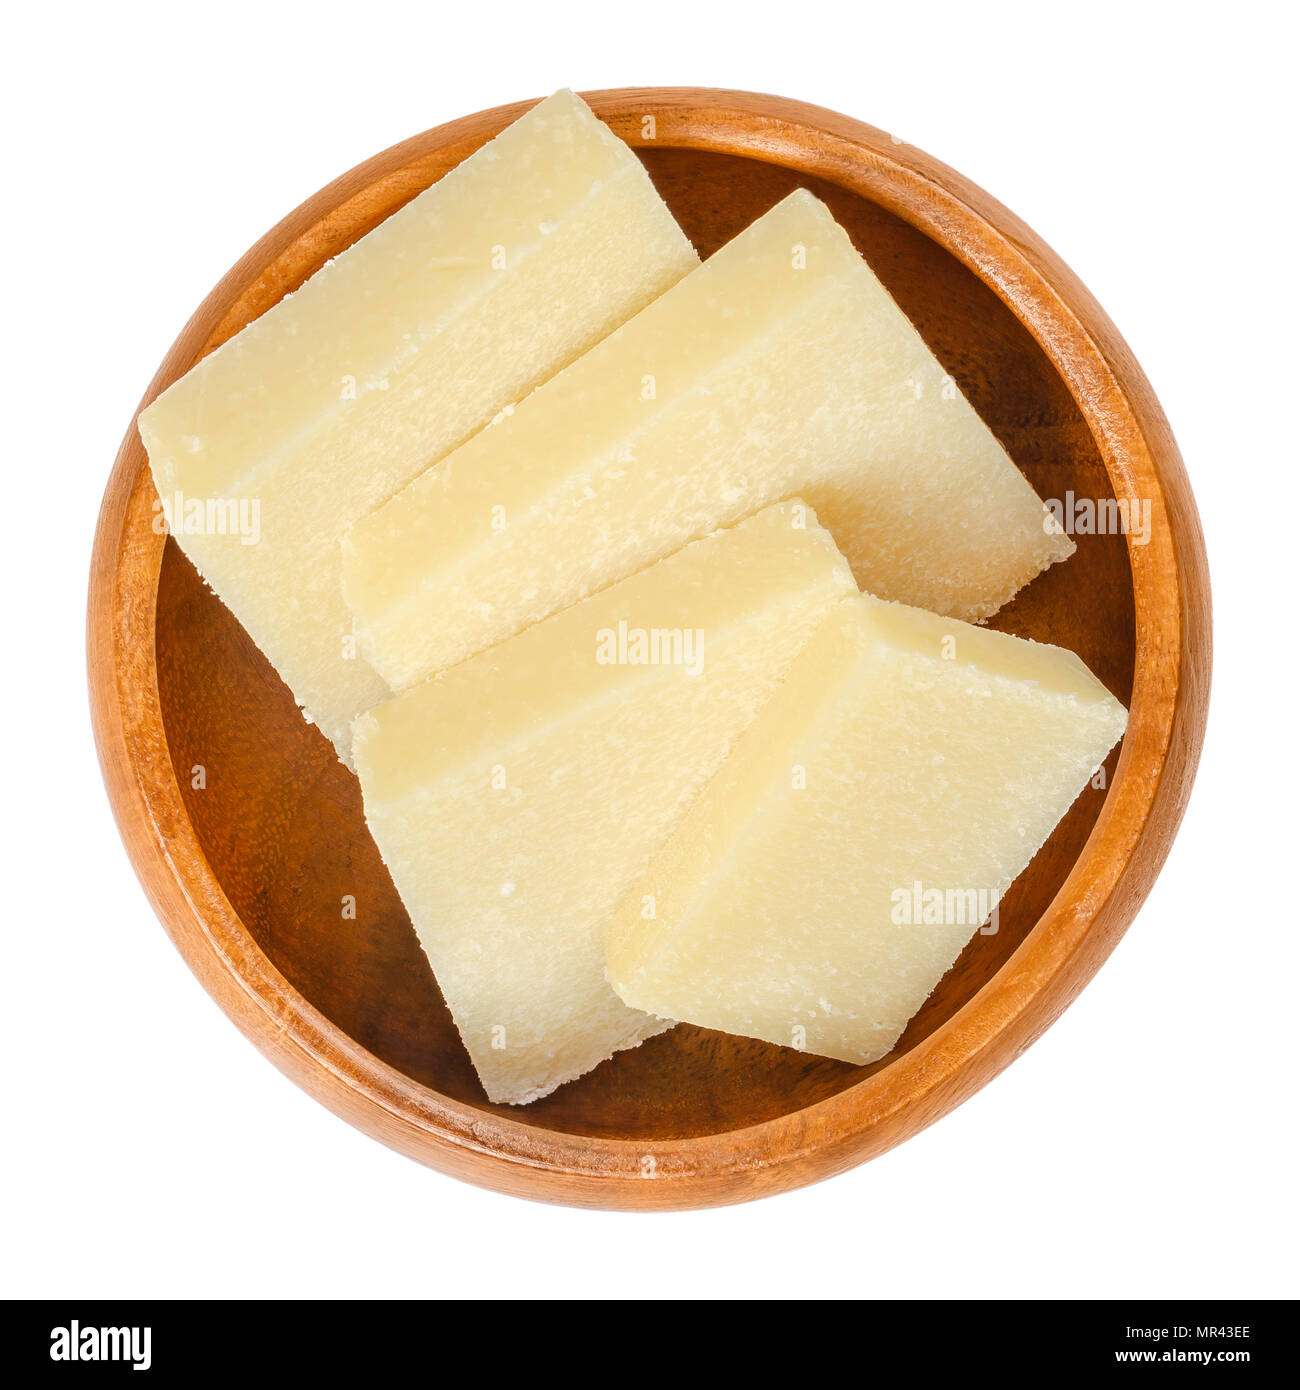 Formaggio parmigiano fette nella ciotola di legno. Parmigiano Reggiano. Duro italiano, granulare formaggio, leggermente di colore giallo, fatta di pastorizzato di latte di vacca. Foto Stock